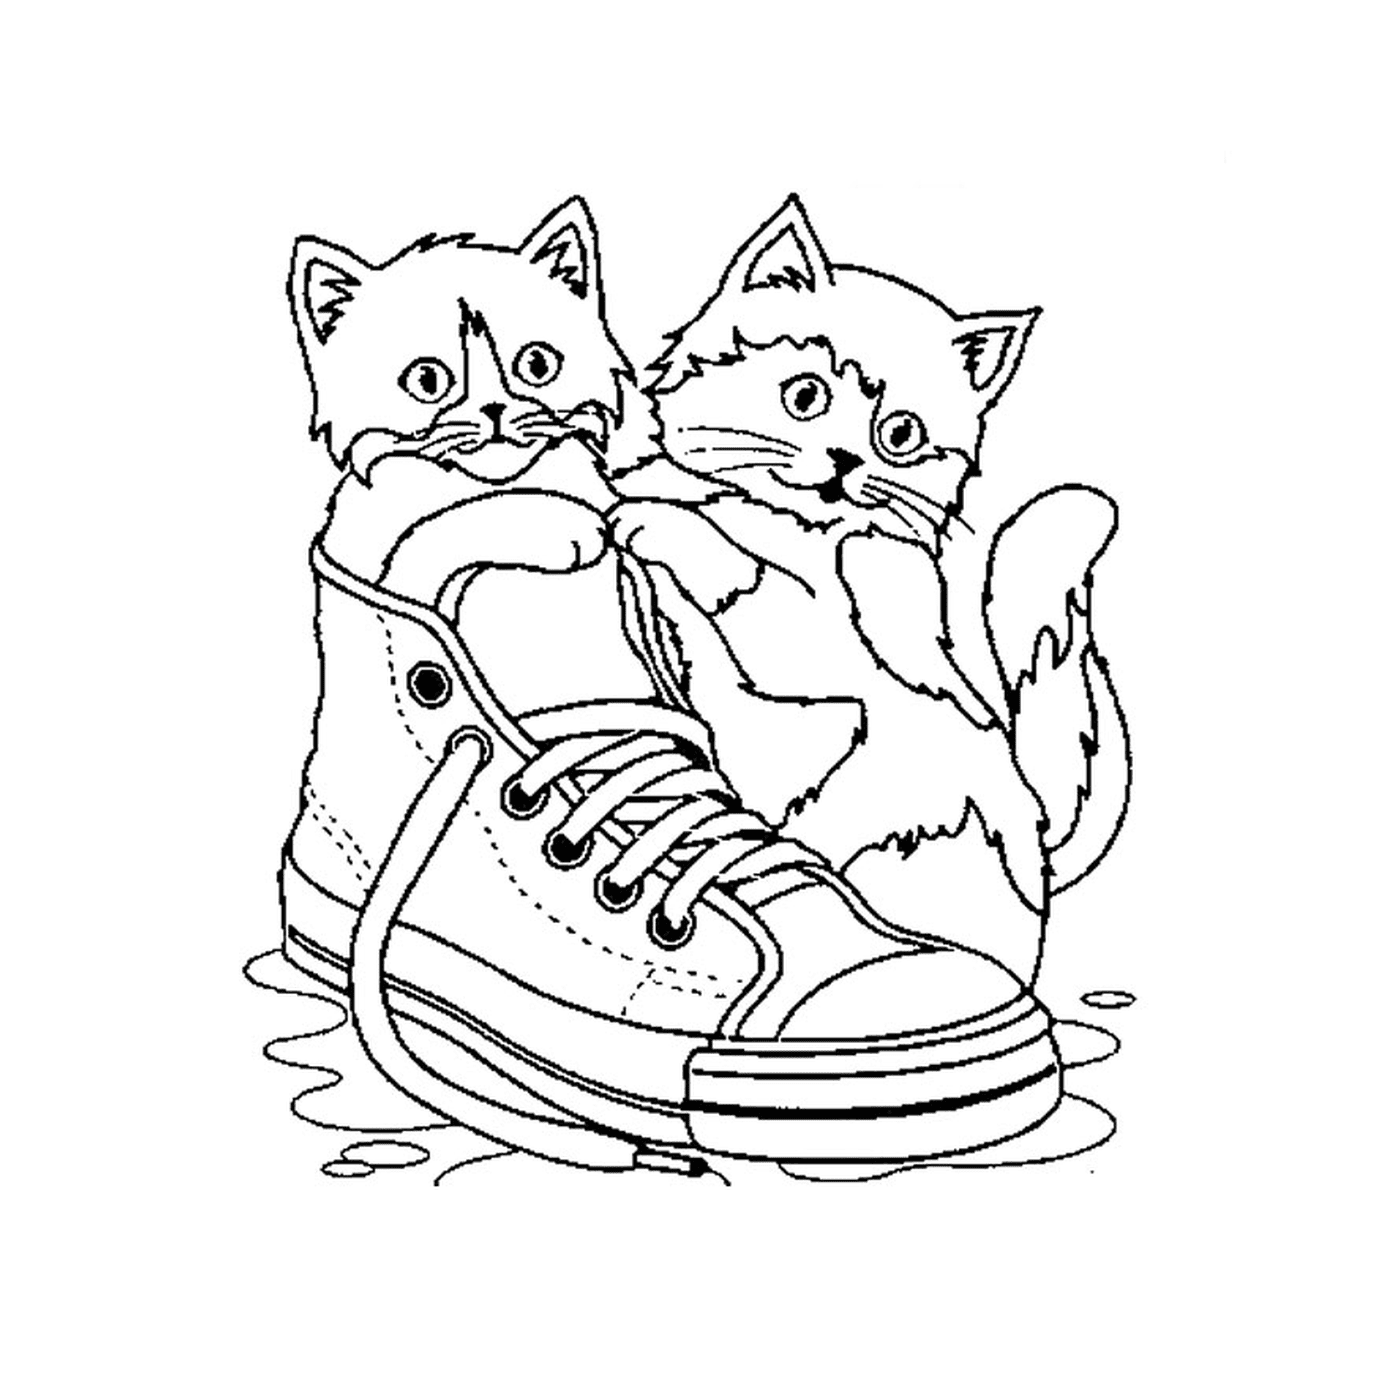  两只猫坐在水里一只鞋上 